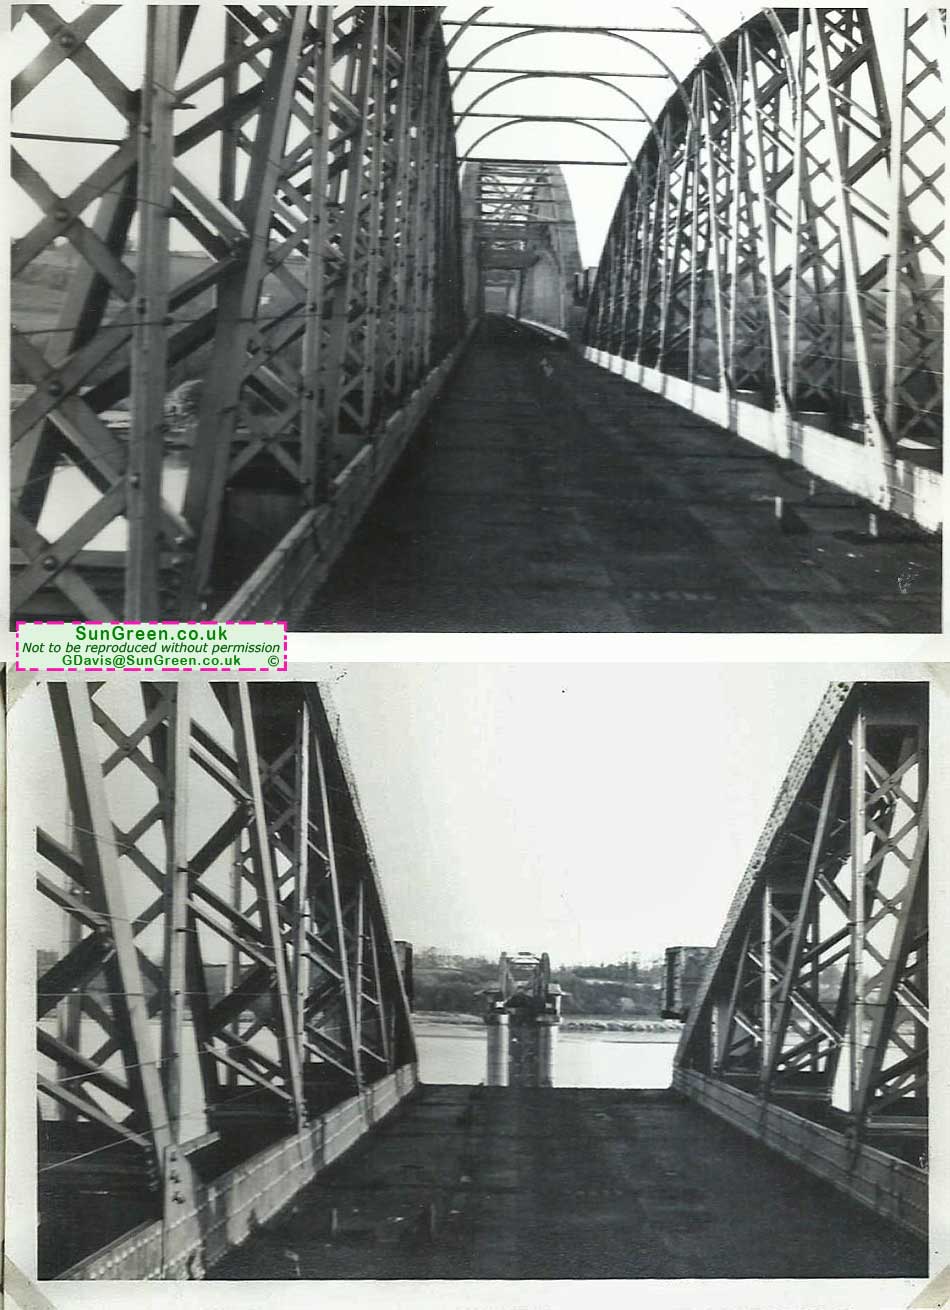 A second photo of the Seven Rail Bridge.